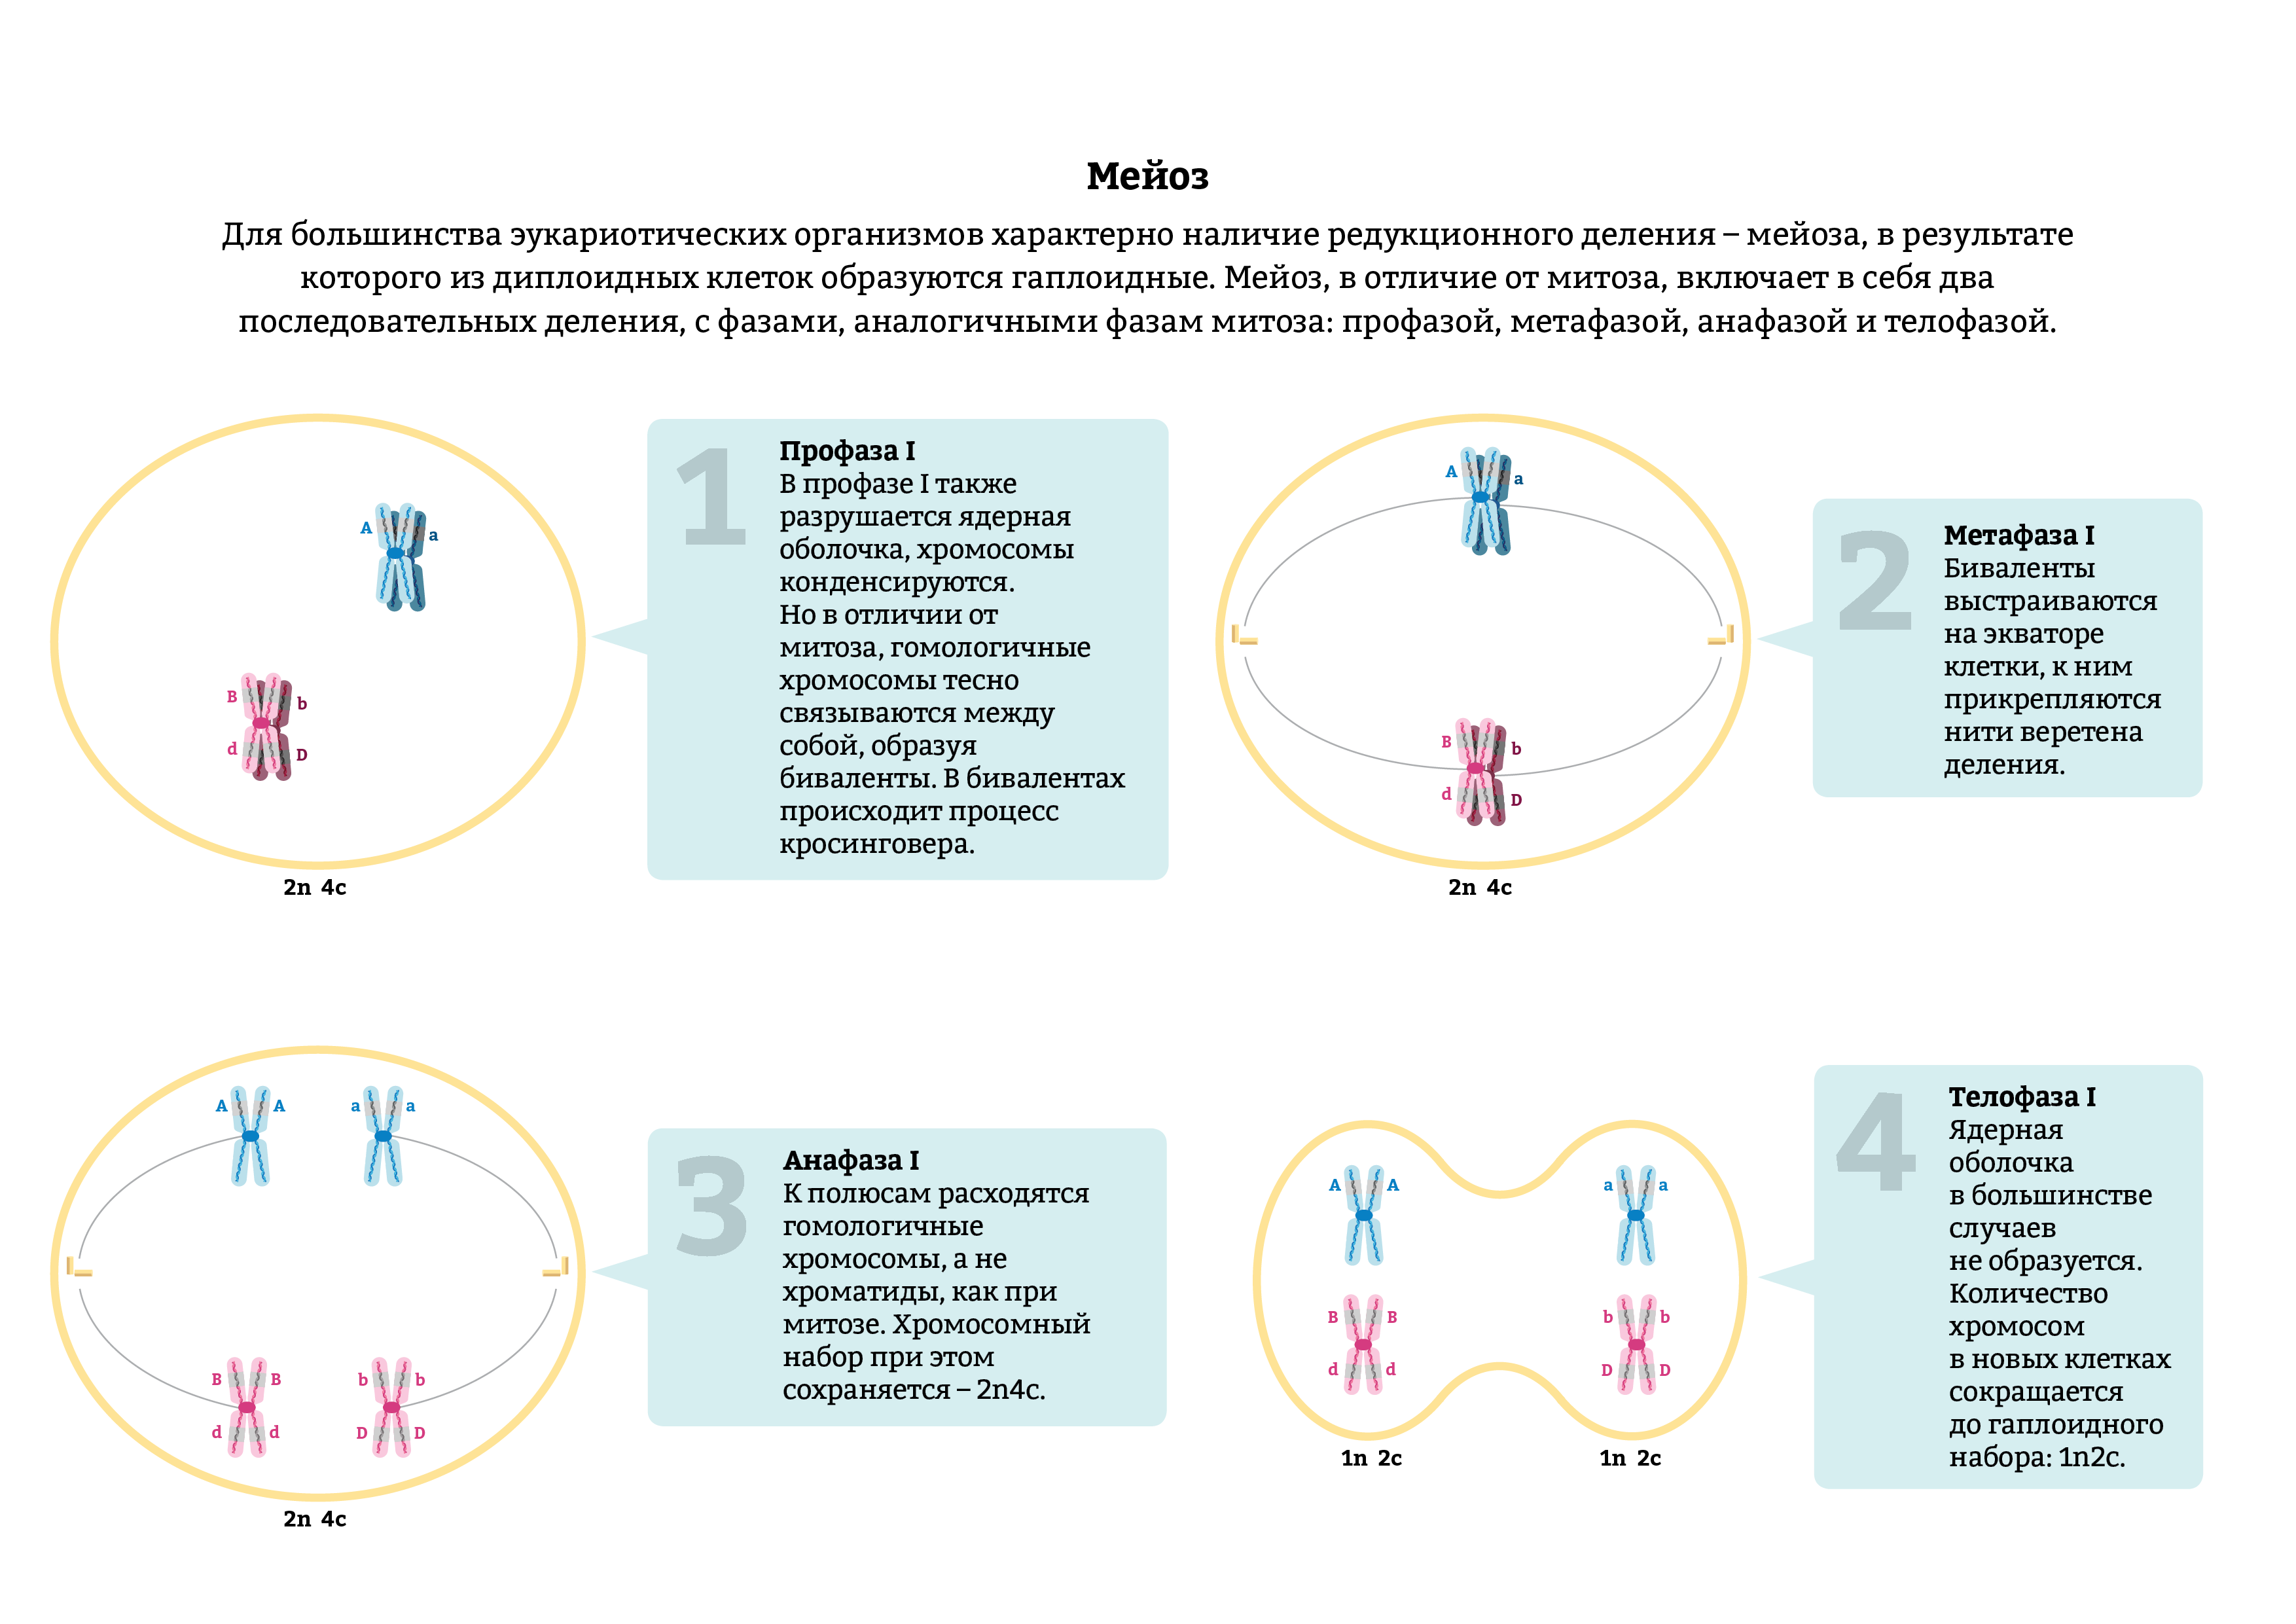 Мейоз анафаза 2 набор хромосом. Гаплоидный набор хромосом в мейозе 1. Анафаза 2 мейоза схема. Второе деление мейоза набор хромосом. Мейоз фазы таблица набор хромосом.